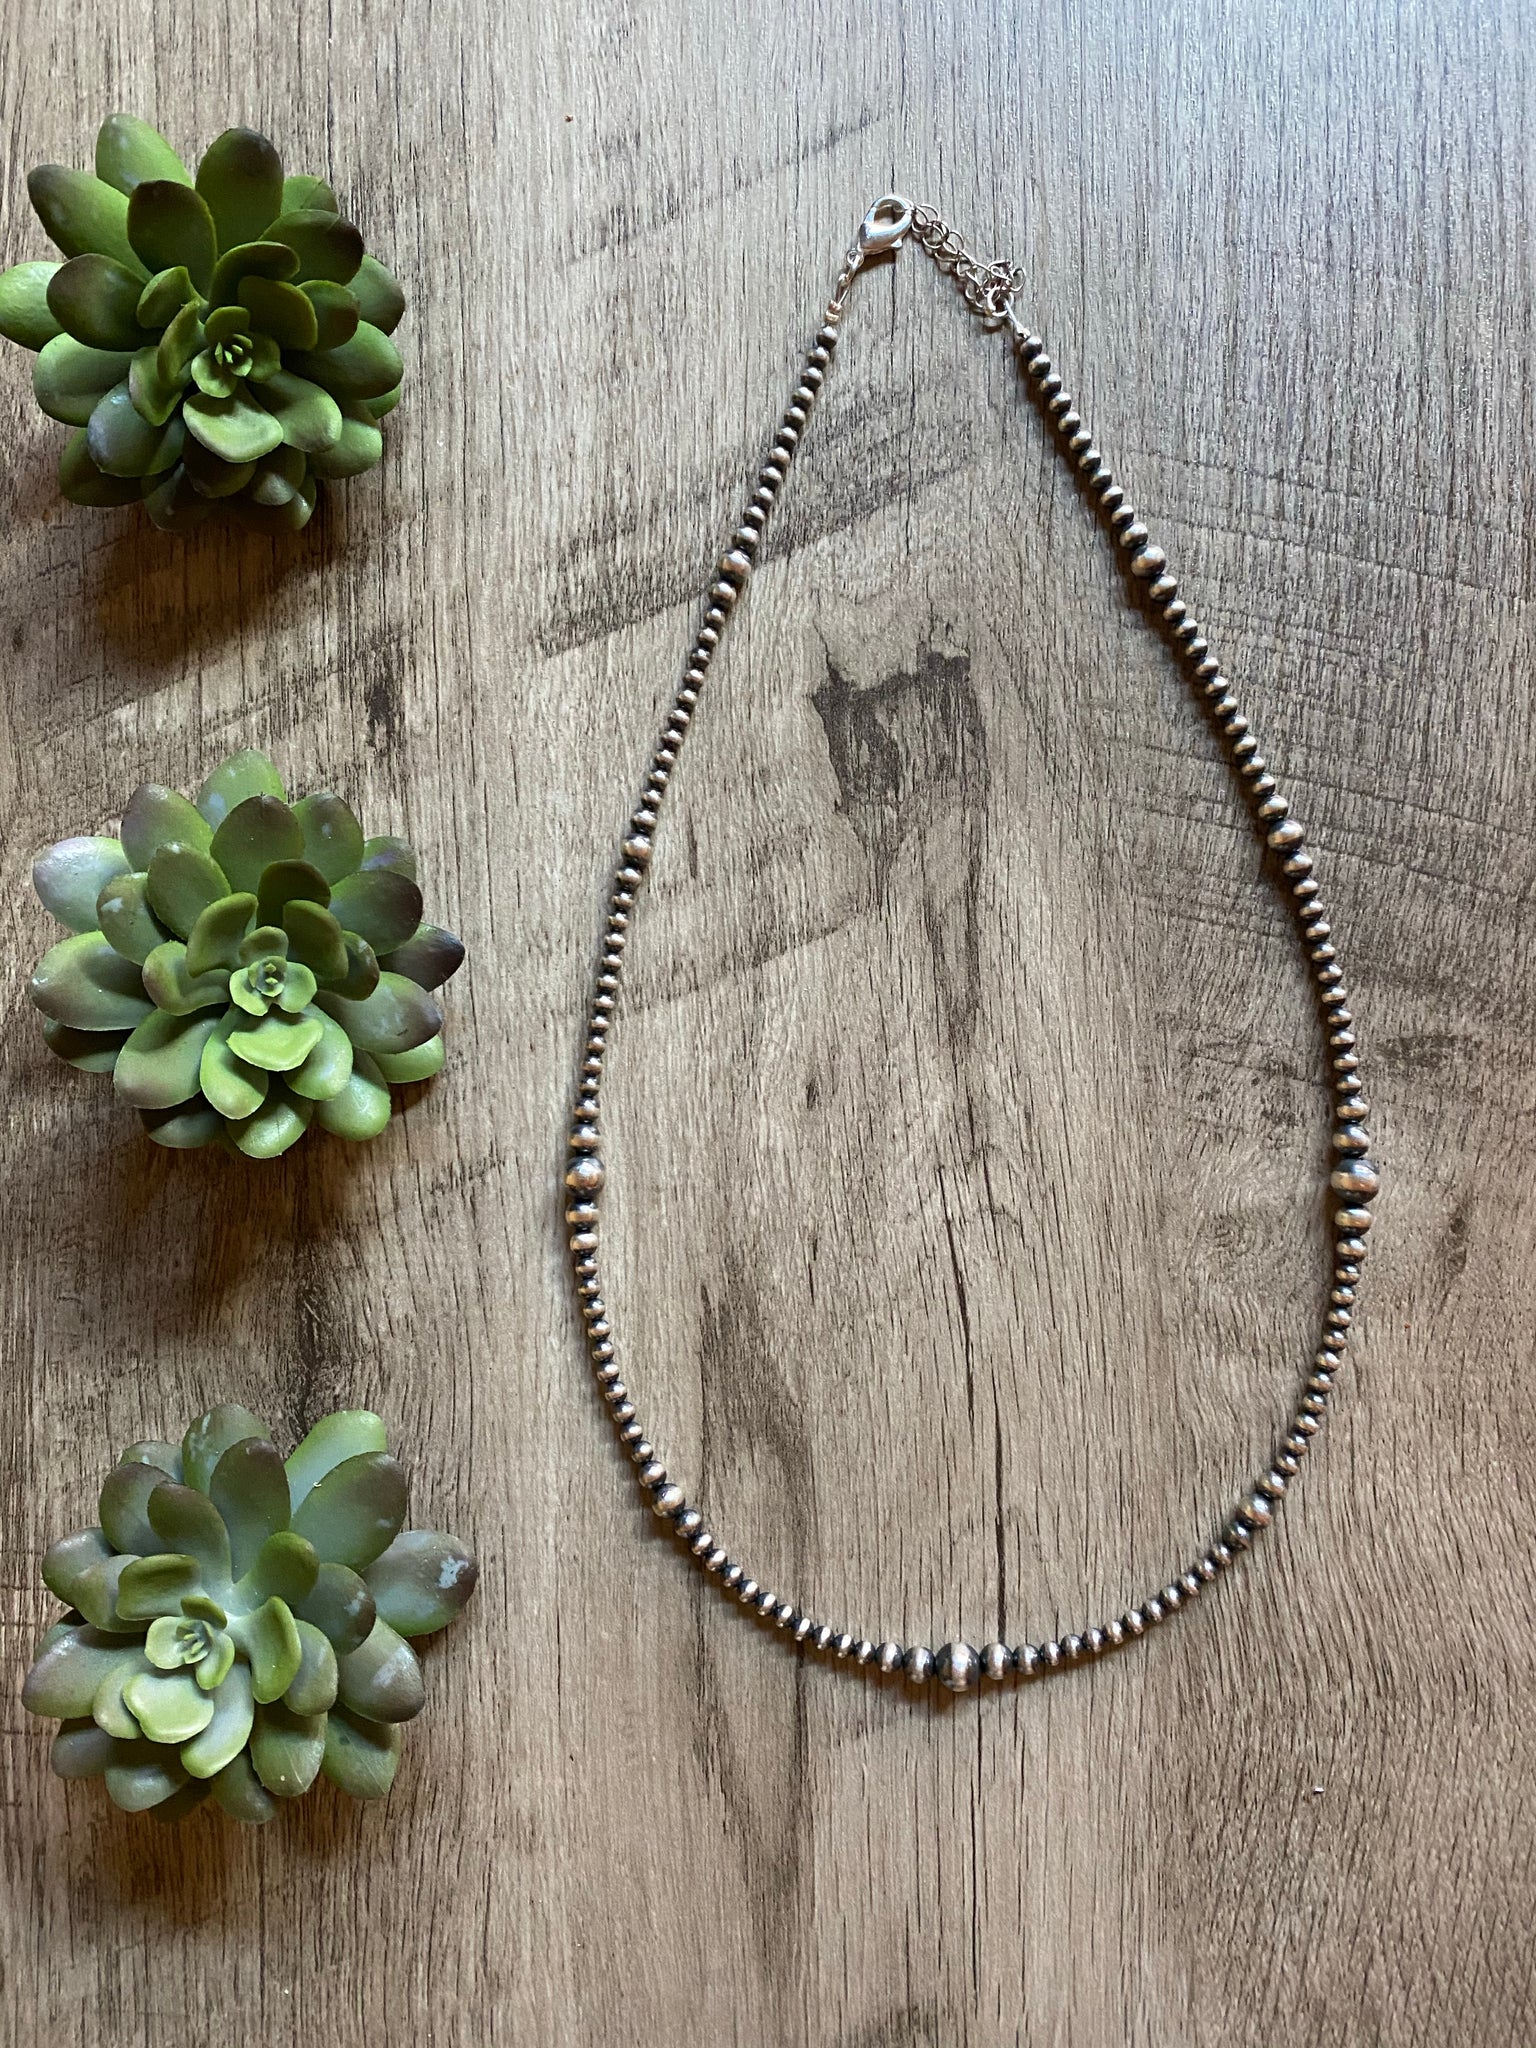 Navajo Necklace - 22 inches